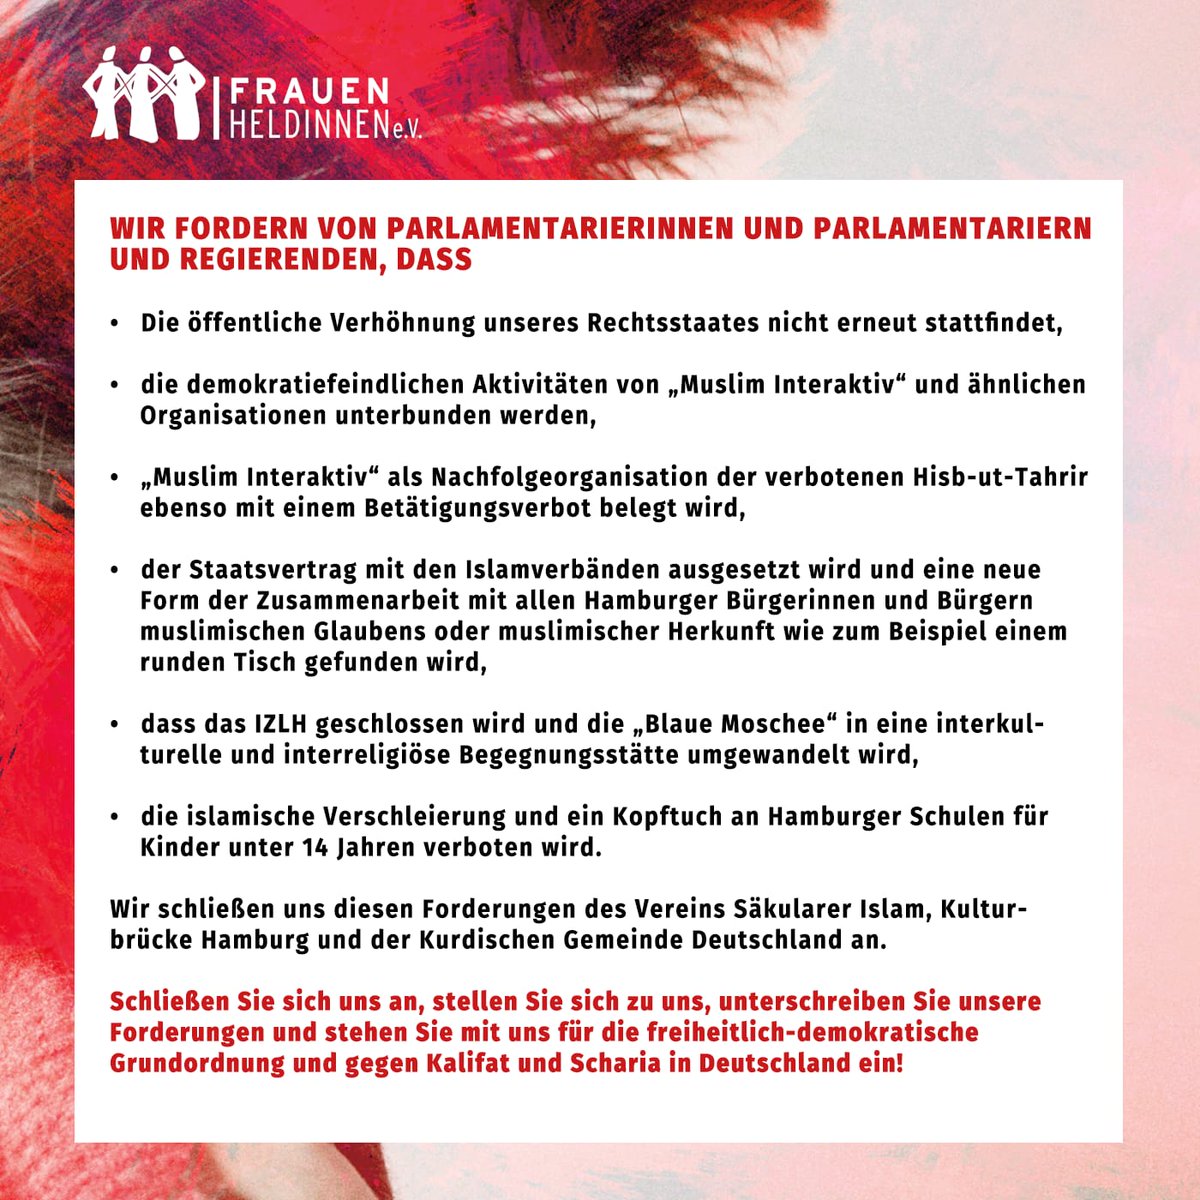 Am Samstag gibt es eine Demo in @hamburg_de gegen den detutschen Rechtsstat wieder @FrauenHeldinnen und andere Gruppen werden dabei sein und stellen Forderungen an die Politik. Bitte endlich hinschauen und handeln! @abendblatt @mopo @BILD_Hamburg @SPIEGEL_Politik @zeitonline_pol